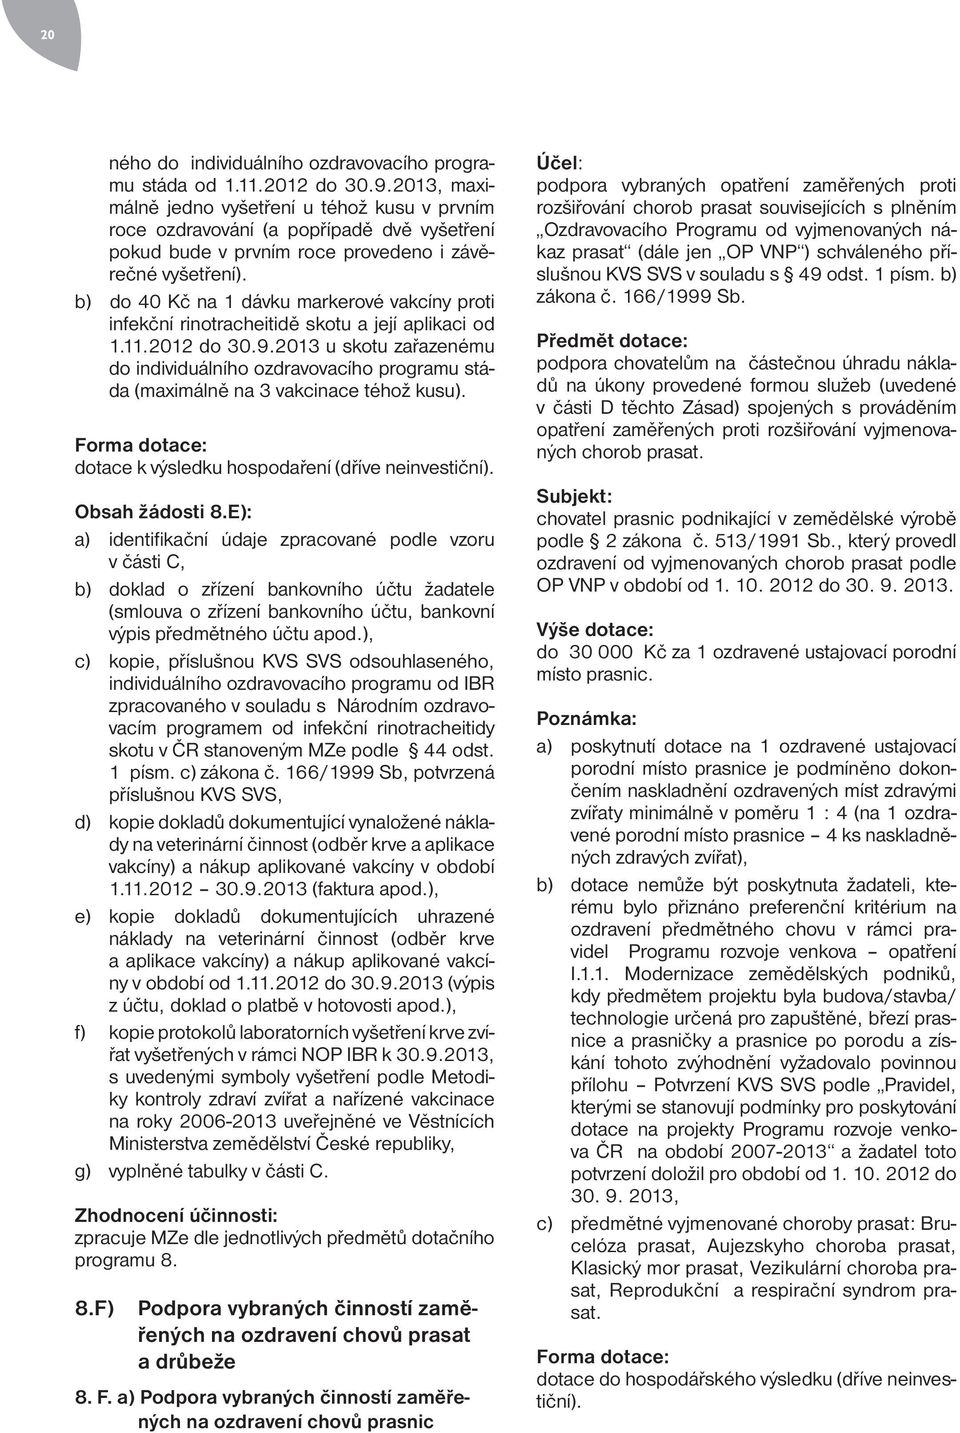 b) do 40 Kč na 1 dávku markerové vakcíny proti infekční rinotracheitidě skotu a její aplikaci od 1.11.2012 do 30.9.